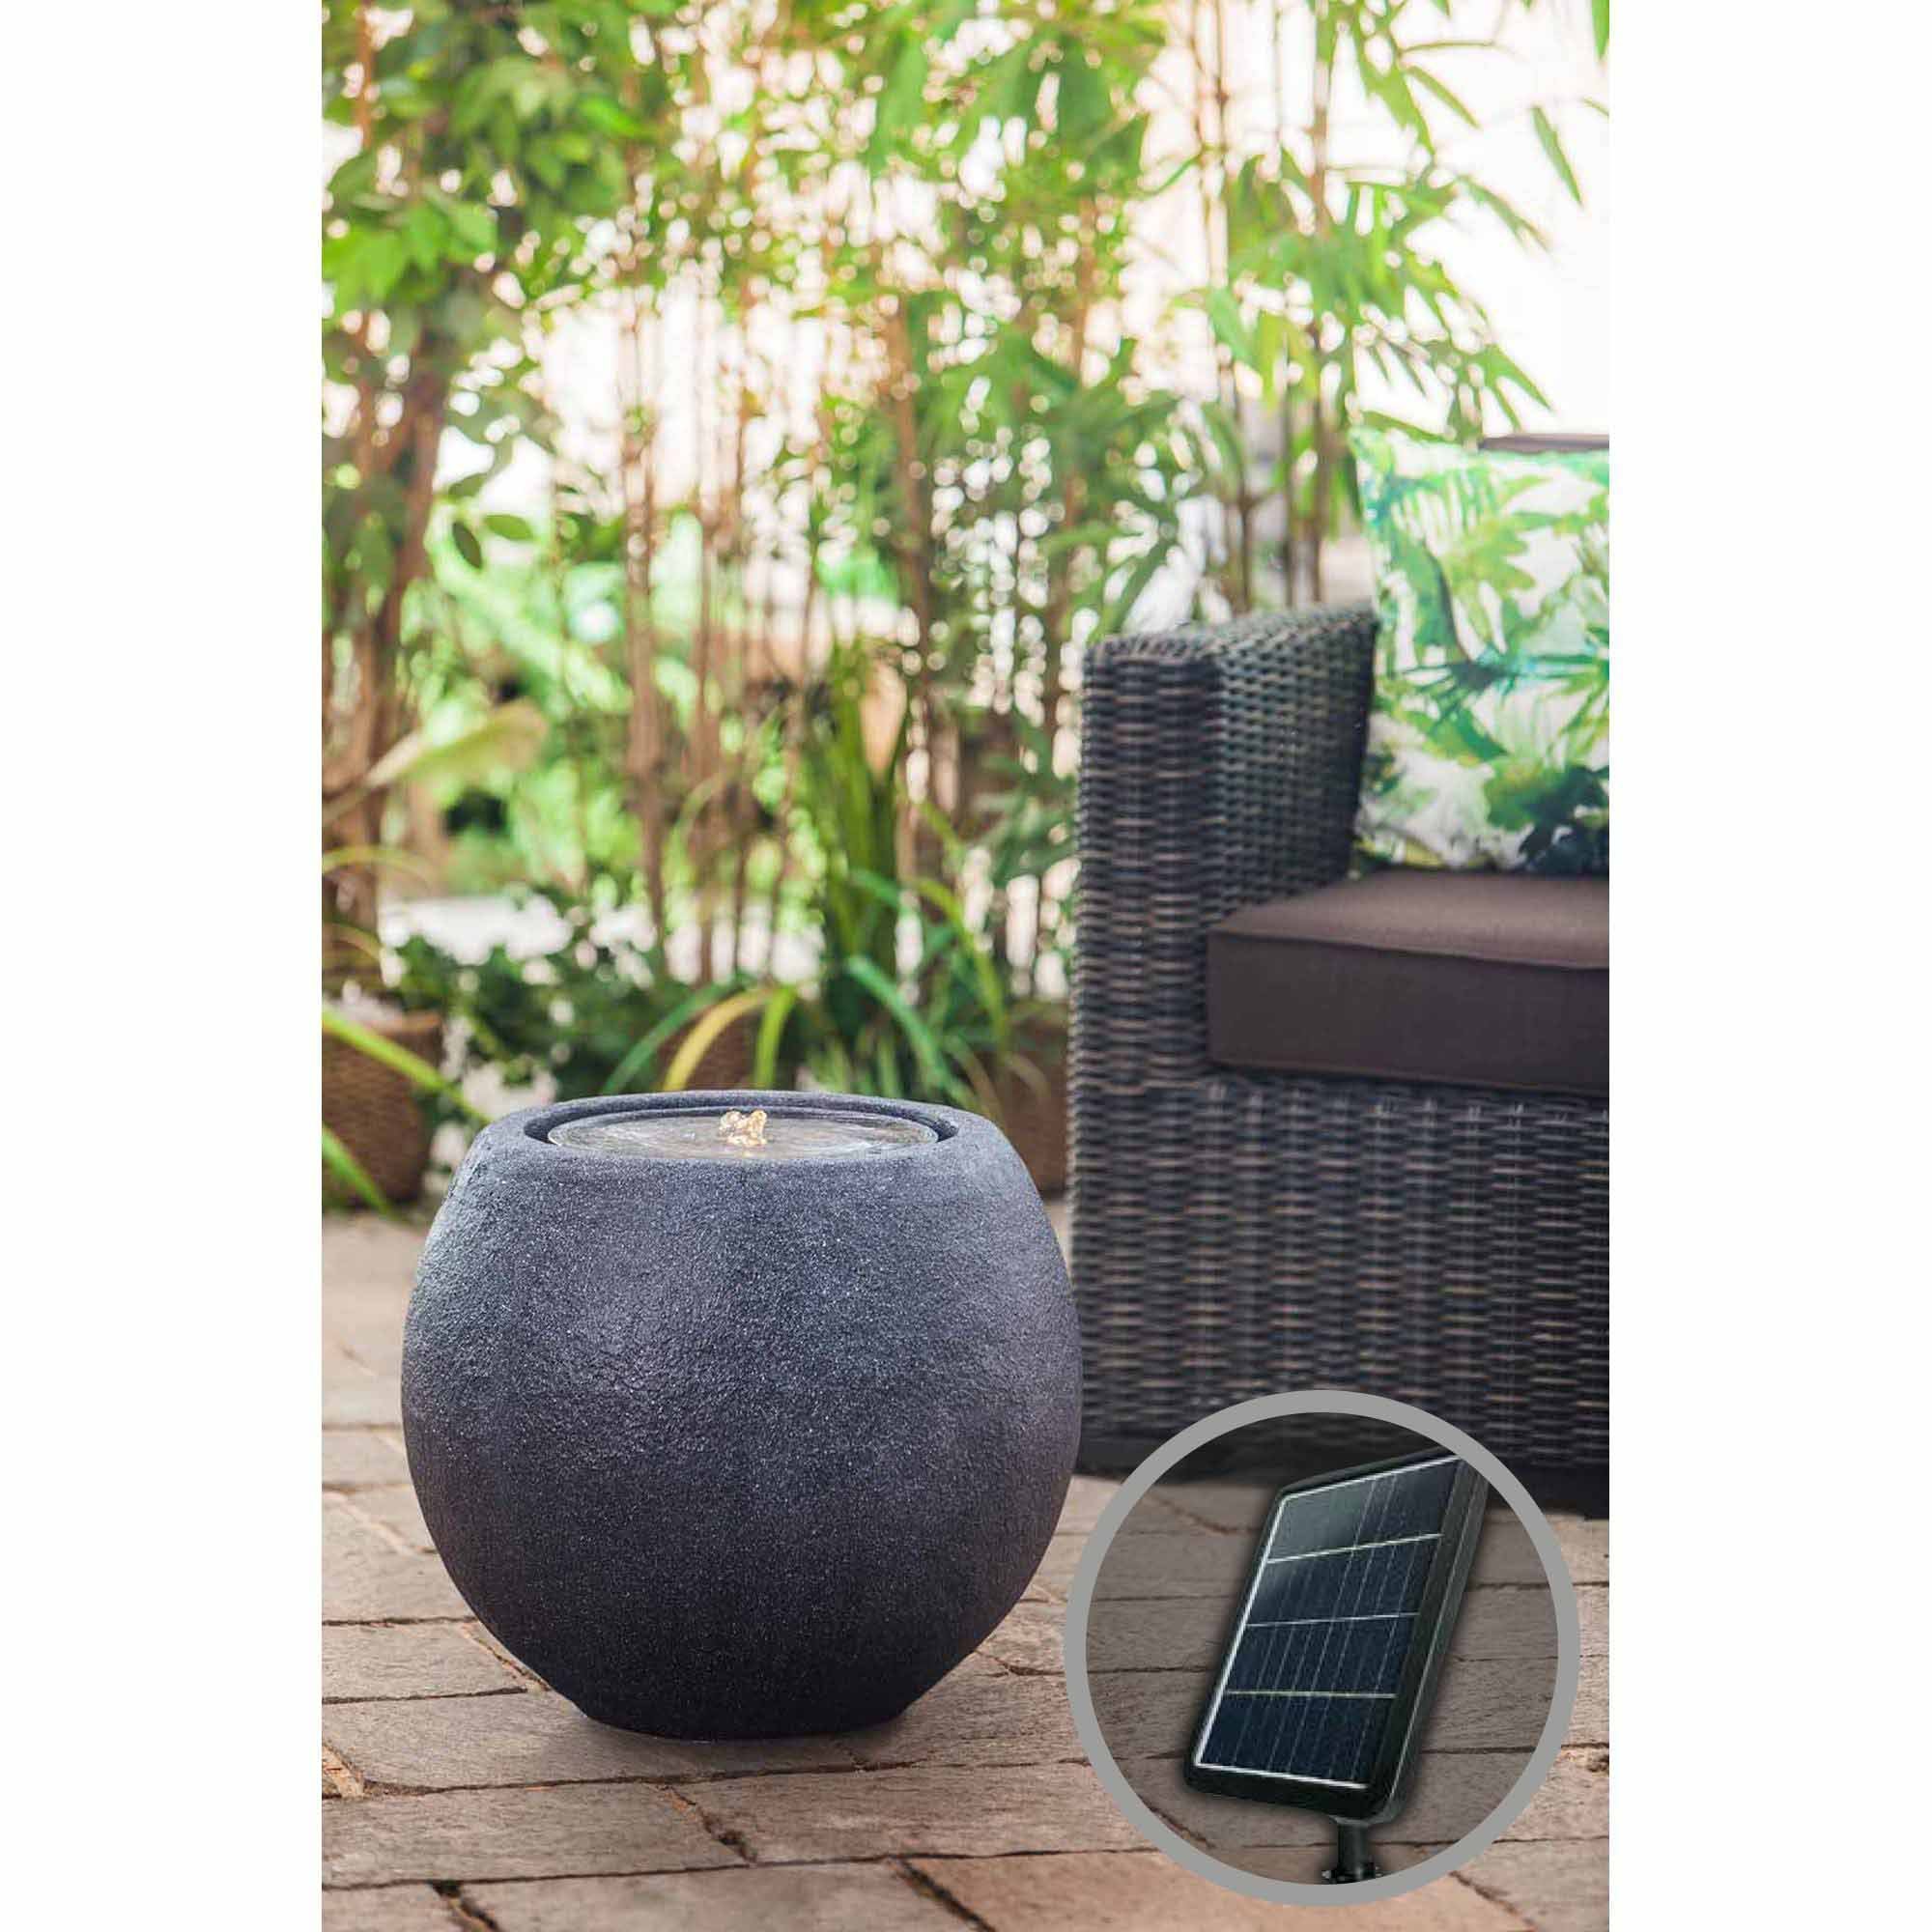 Solar-Gartenbrunnen Ball mit Akku und LED, schwarz, 50x50x43cm